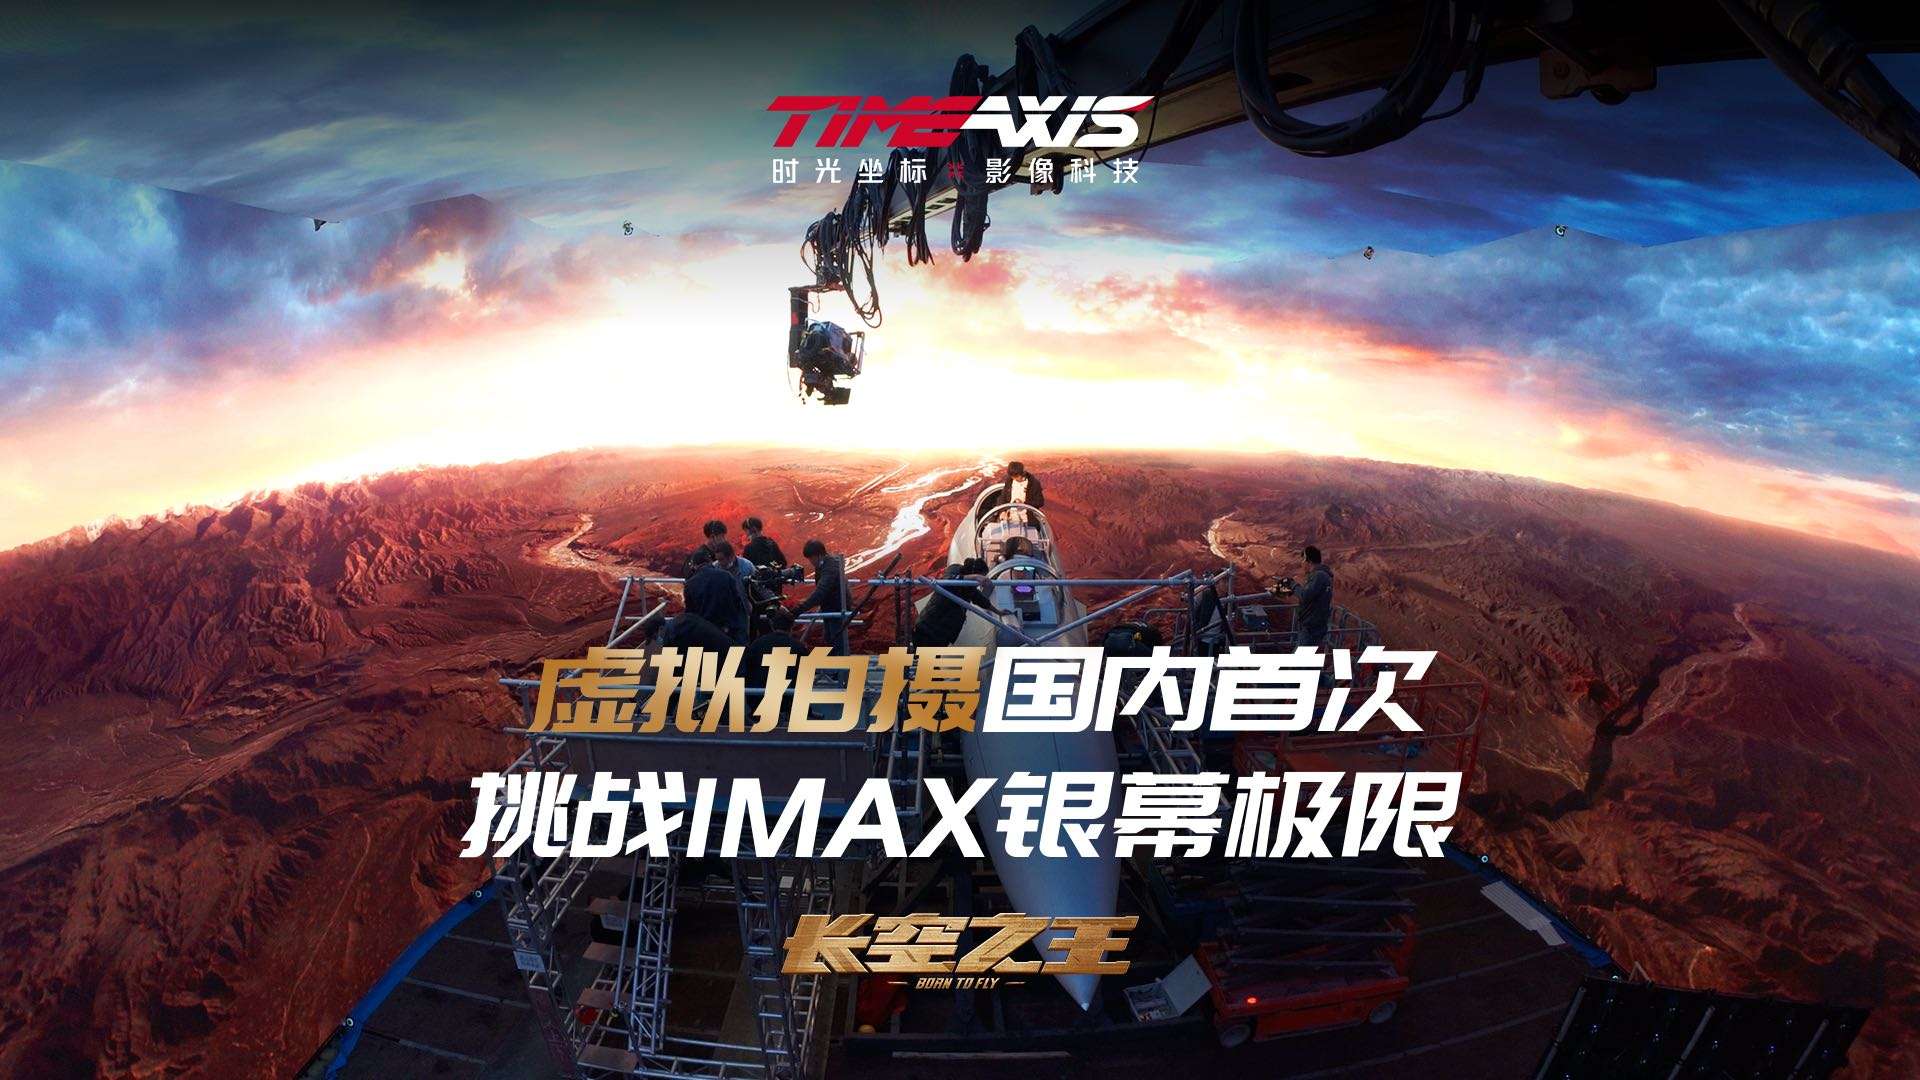 时光坐标《长空之王》虚拟拍摄国内首次挑战IMAX银幕极限